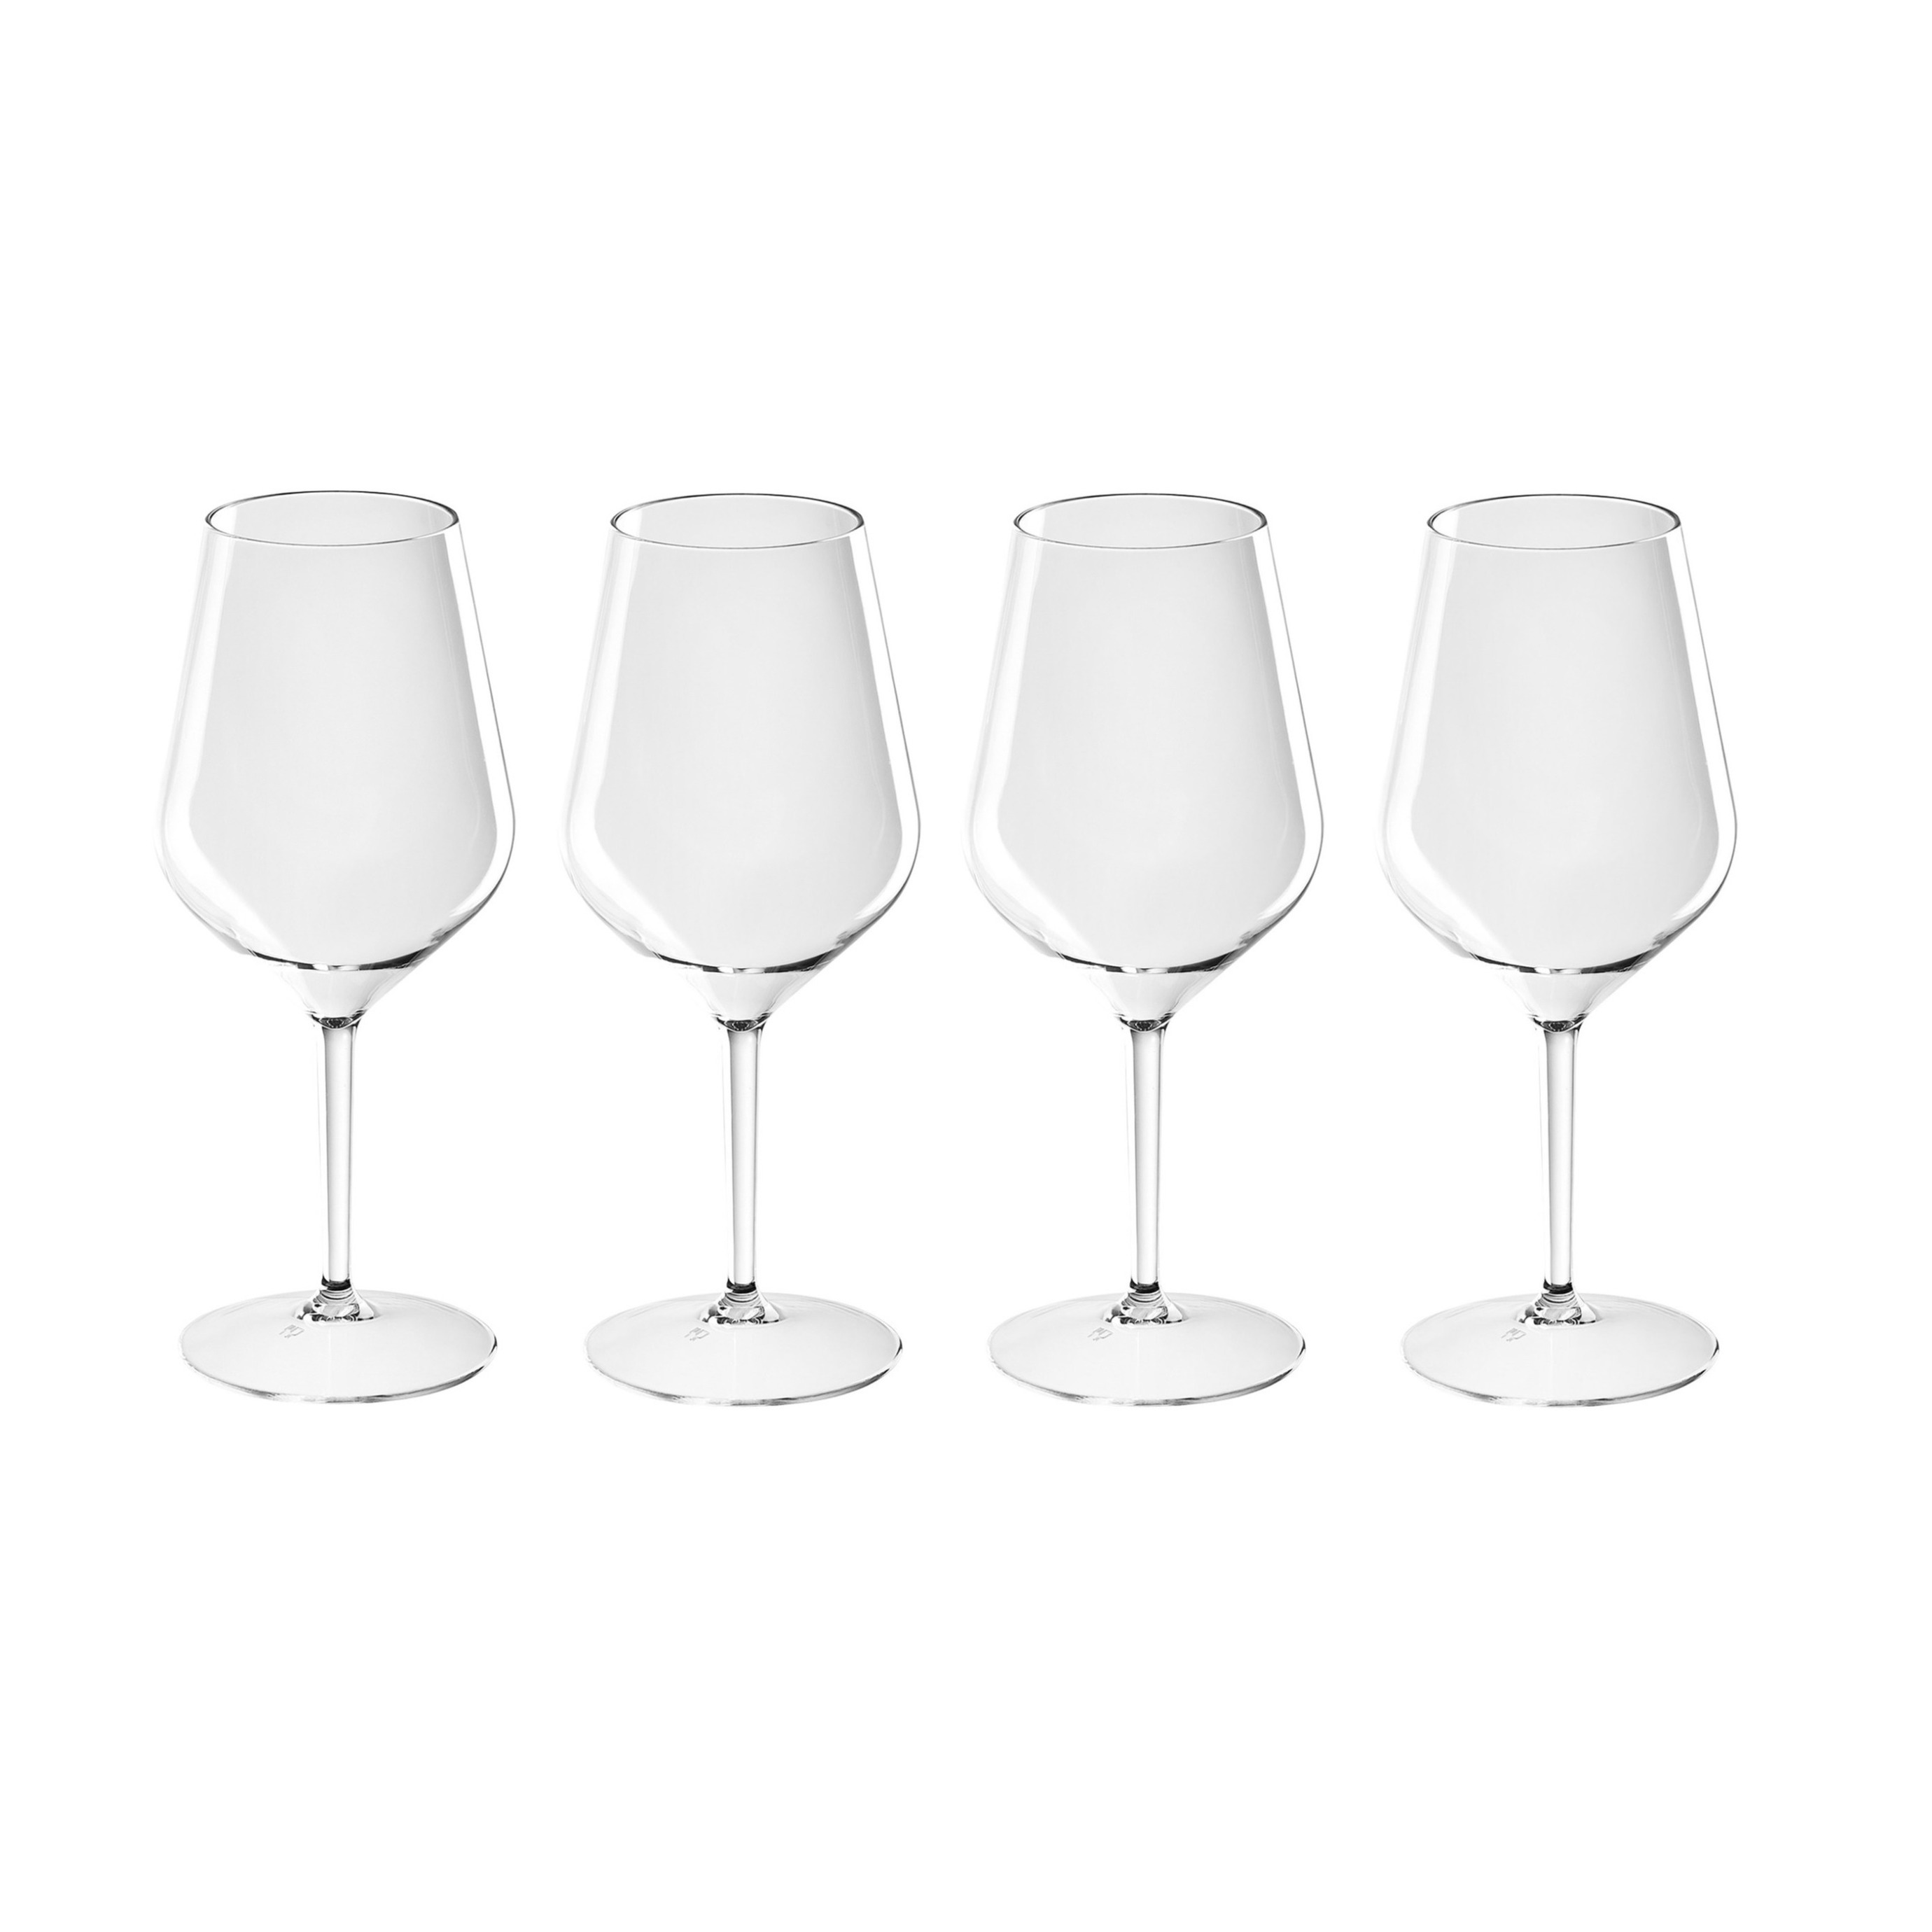 4x Witte of rode wijn glazen 47 cl-470 ml van onbreekbaar kunststof